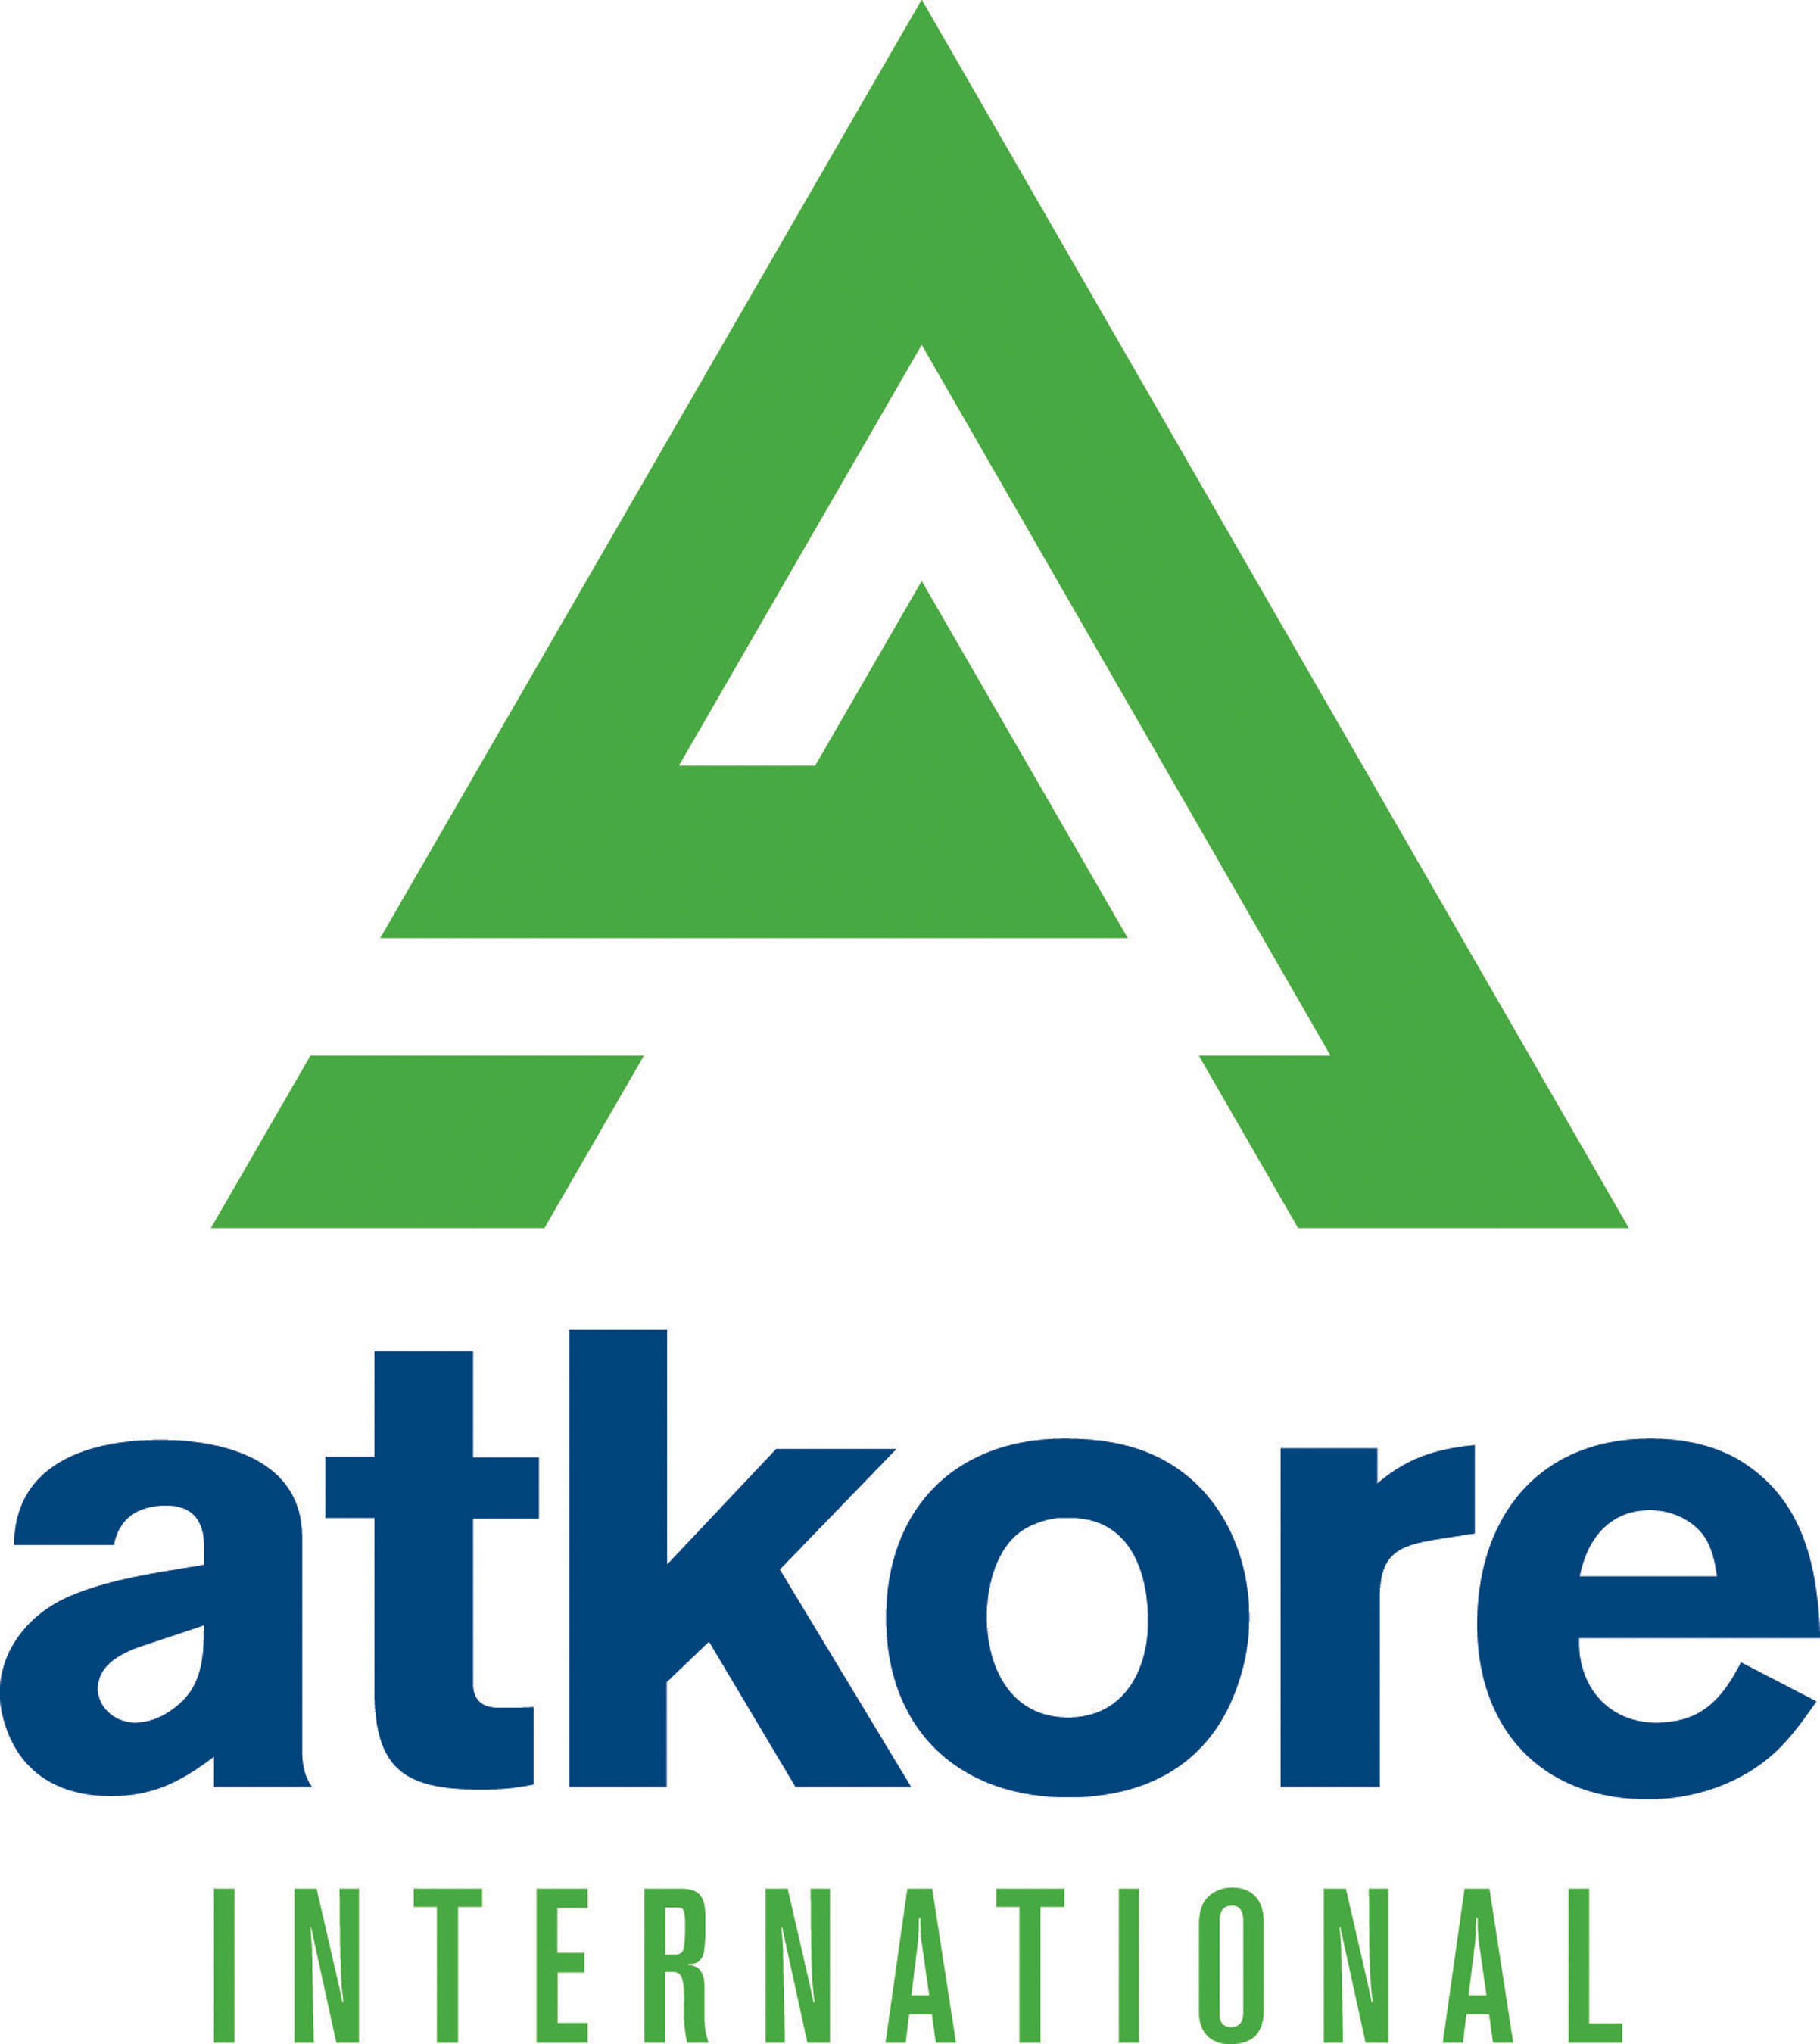 Atkore logo. (PRNewsFoto/Atkore International Inc.) (PRNewsFoto/)